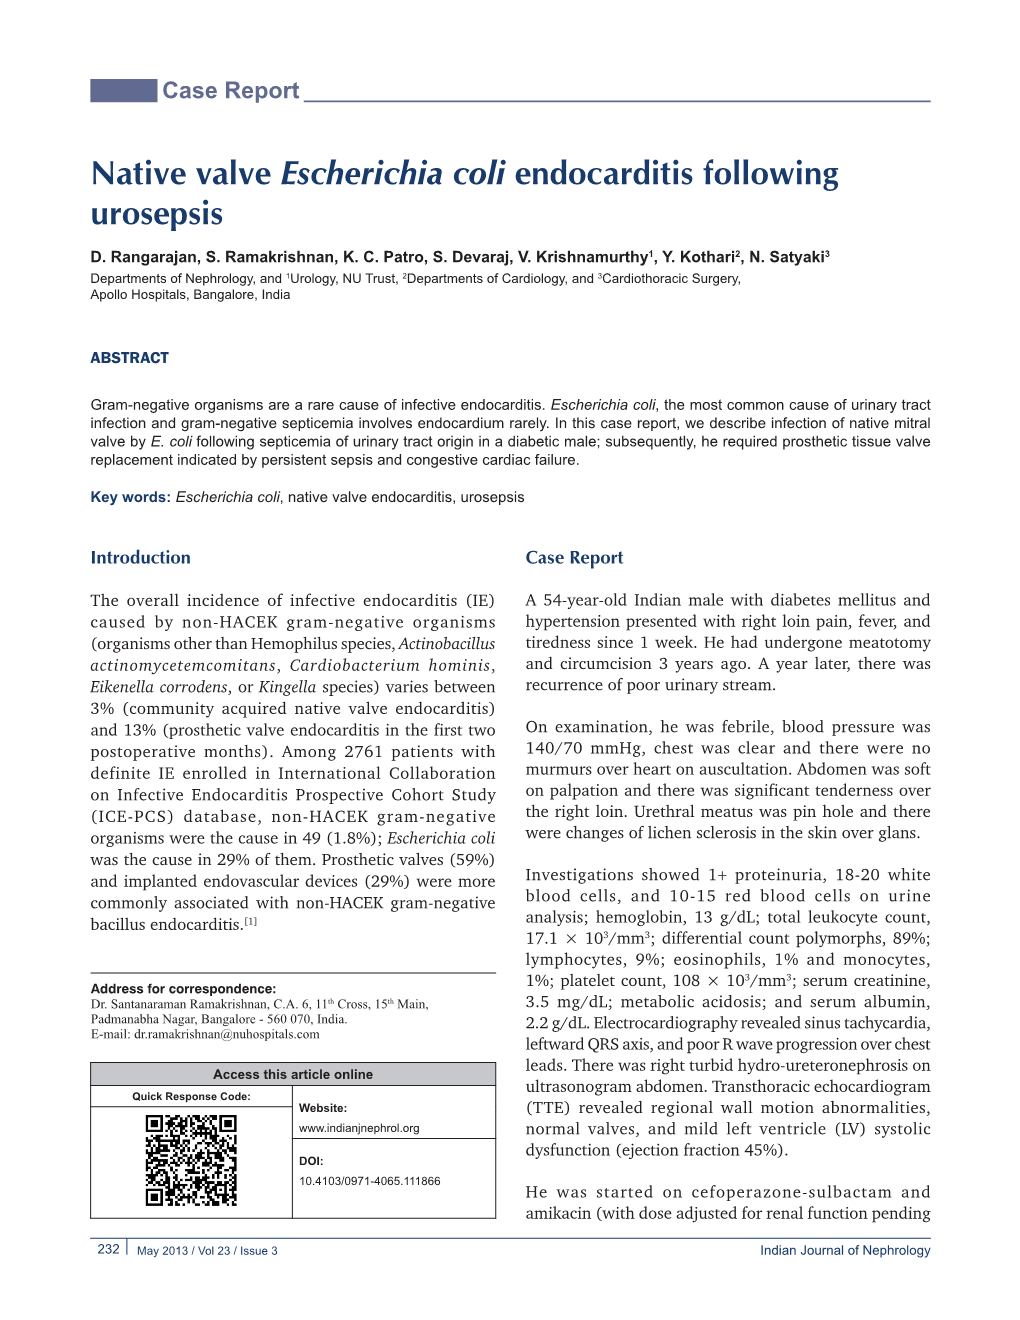 Native Valve Escherichia Coli Endocarditis Following Urosepsis